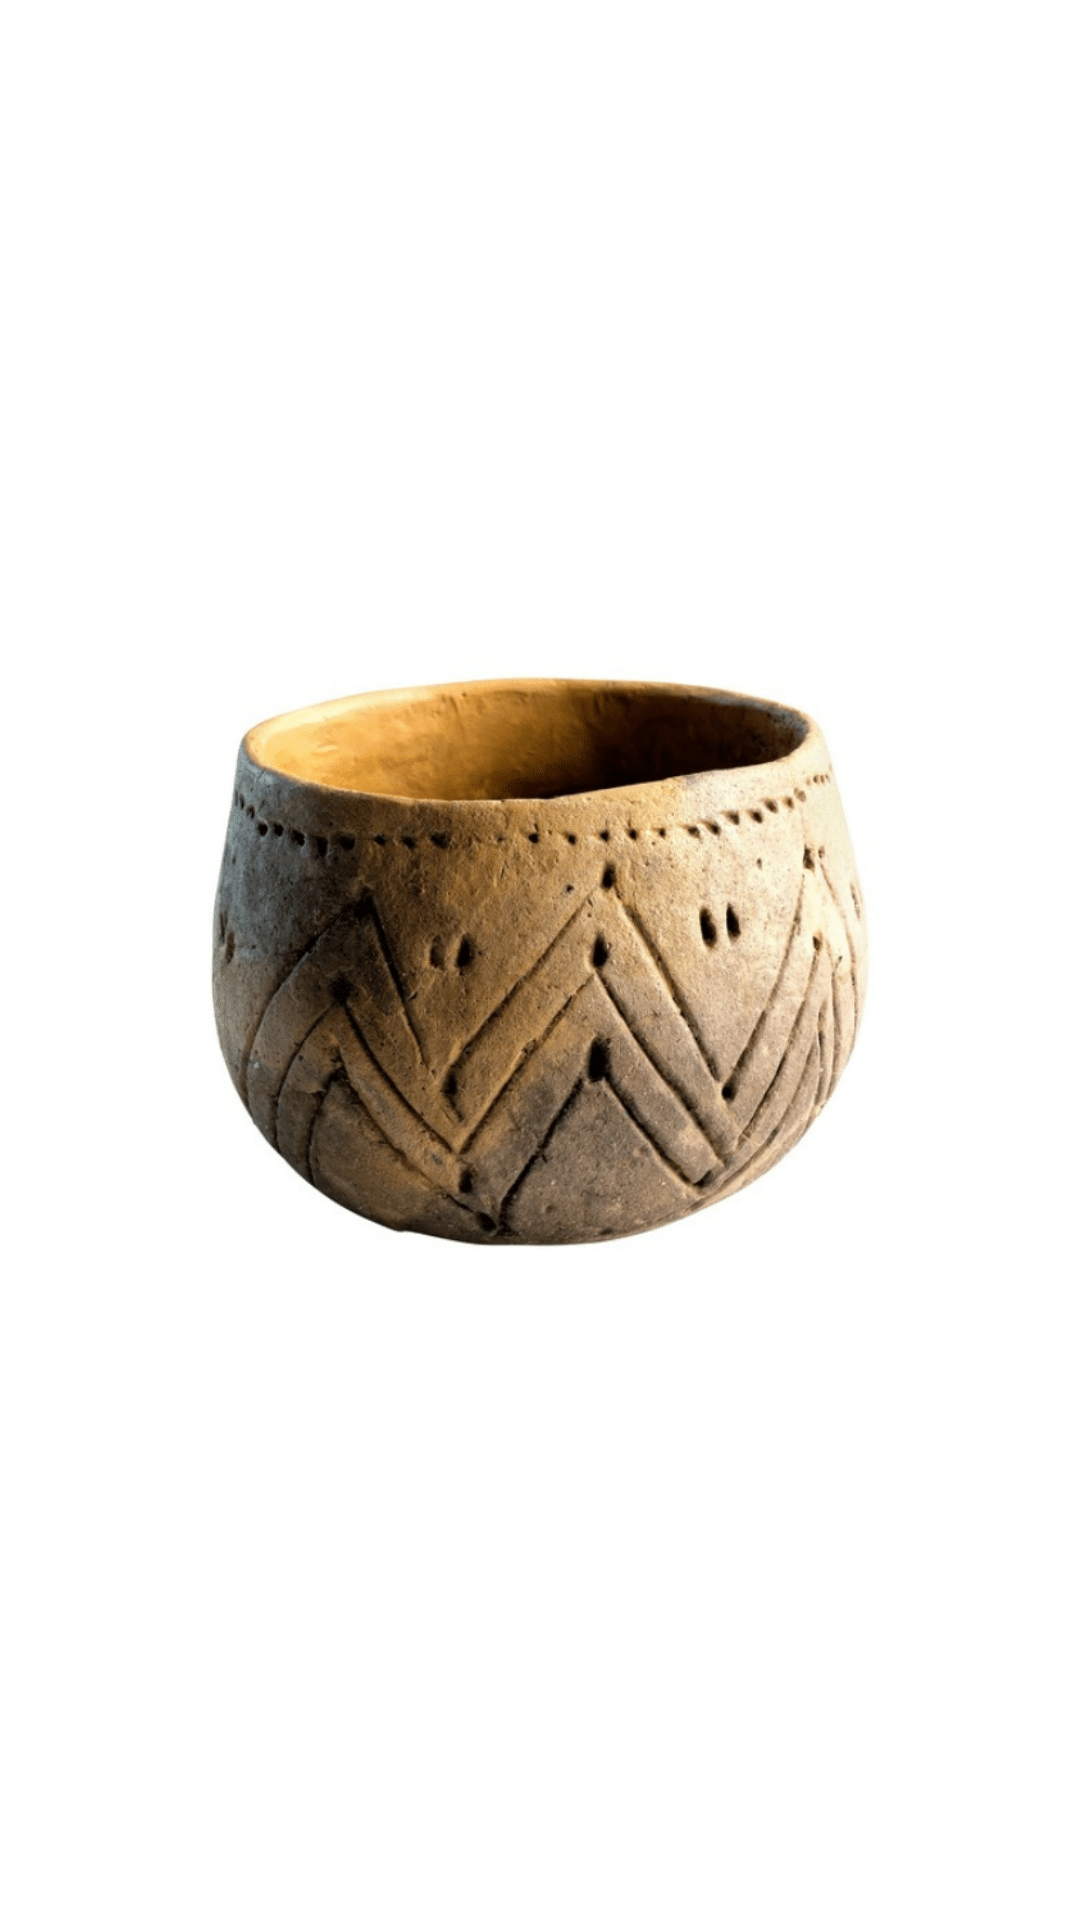 Bandkeramische pot (5300-4900 v.Chr.)